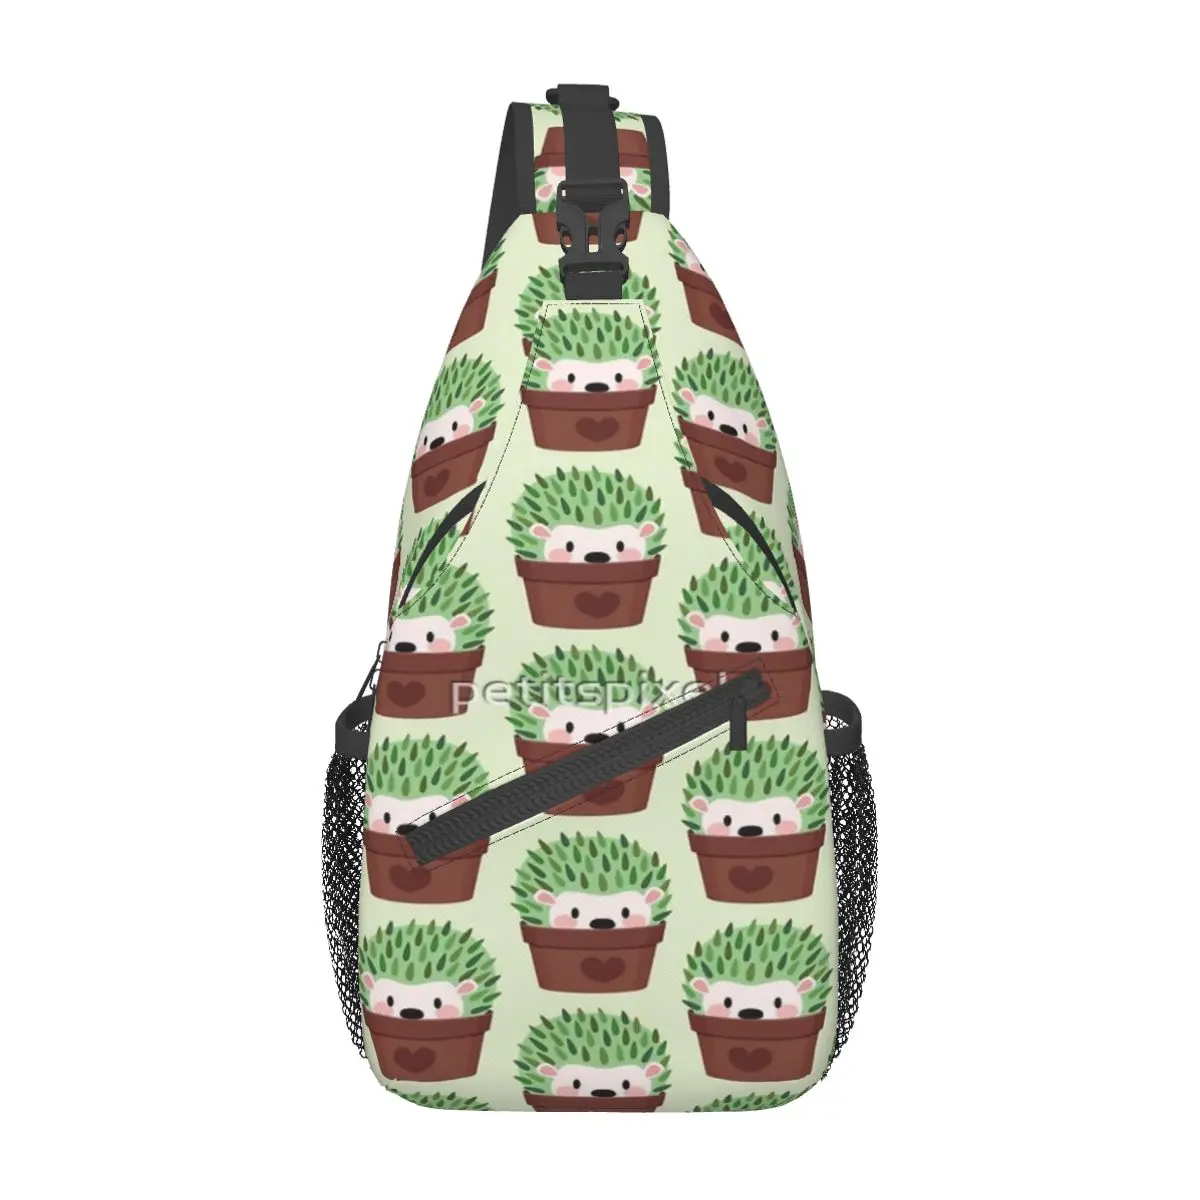 

Нагрудная сумка Hedgehogs, замаскированная кактусами, Современная портативная подходящая офисная нагрудная сумка через плечо по диагонали, настраиваемая